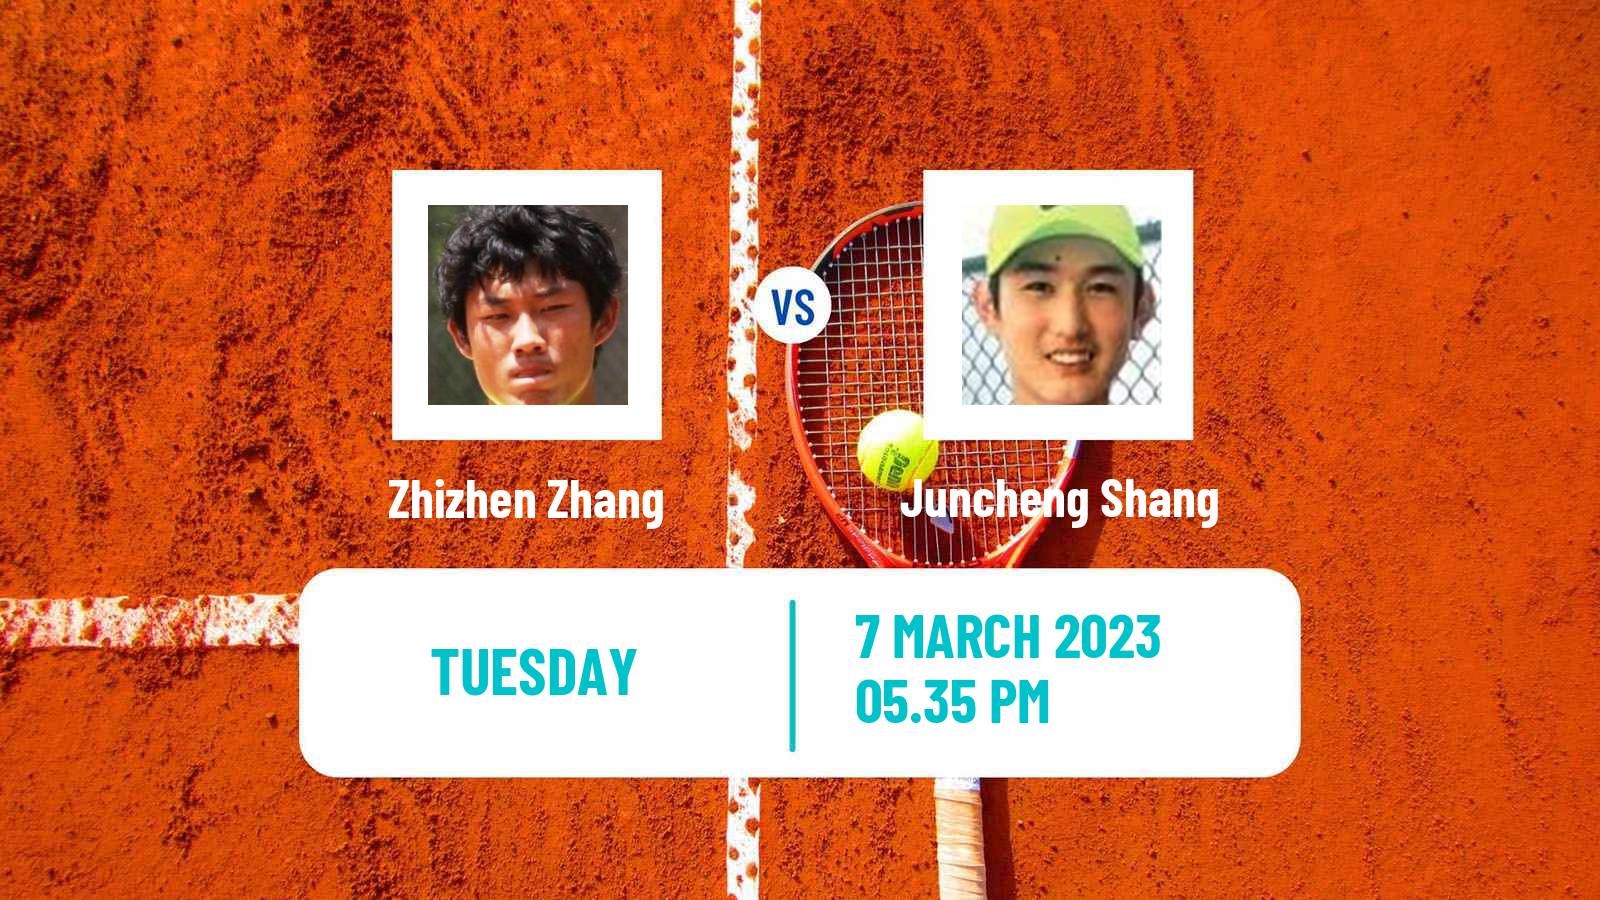 Tennis ATP Indian Wells Zhizhen Zhang - Juncheng Shang